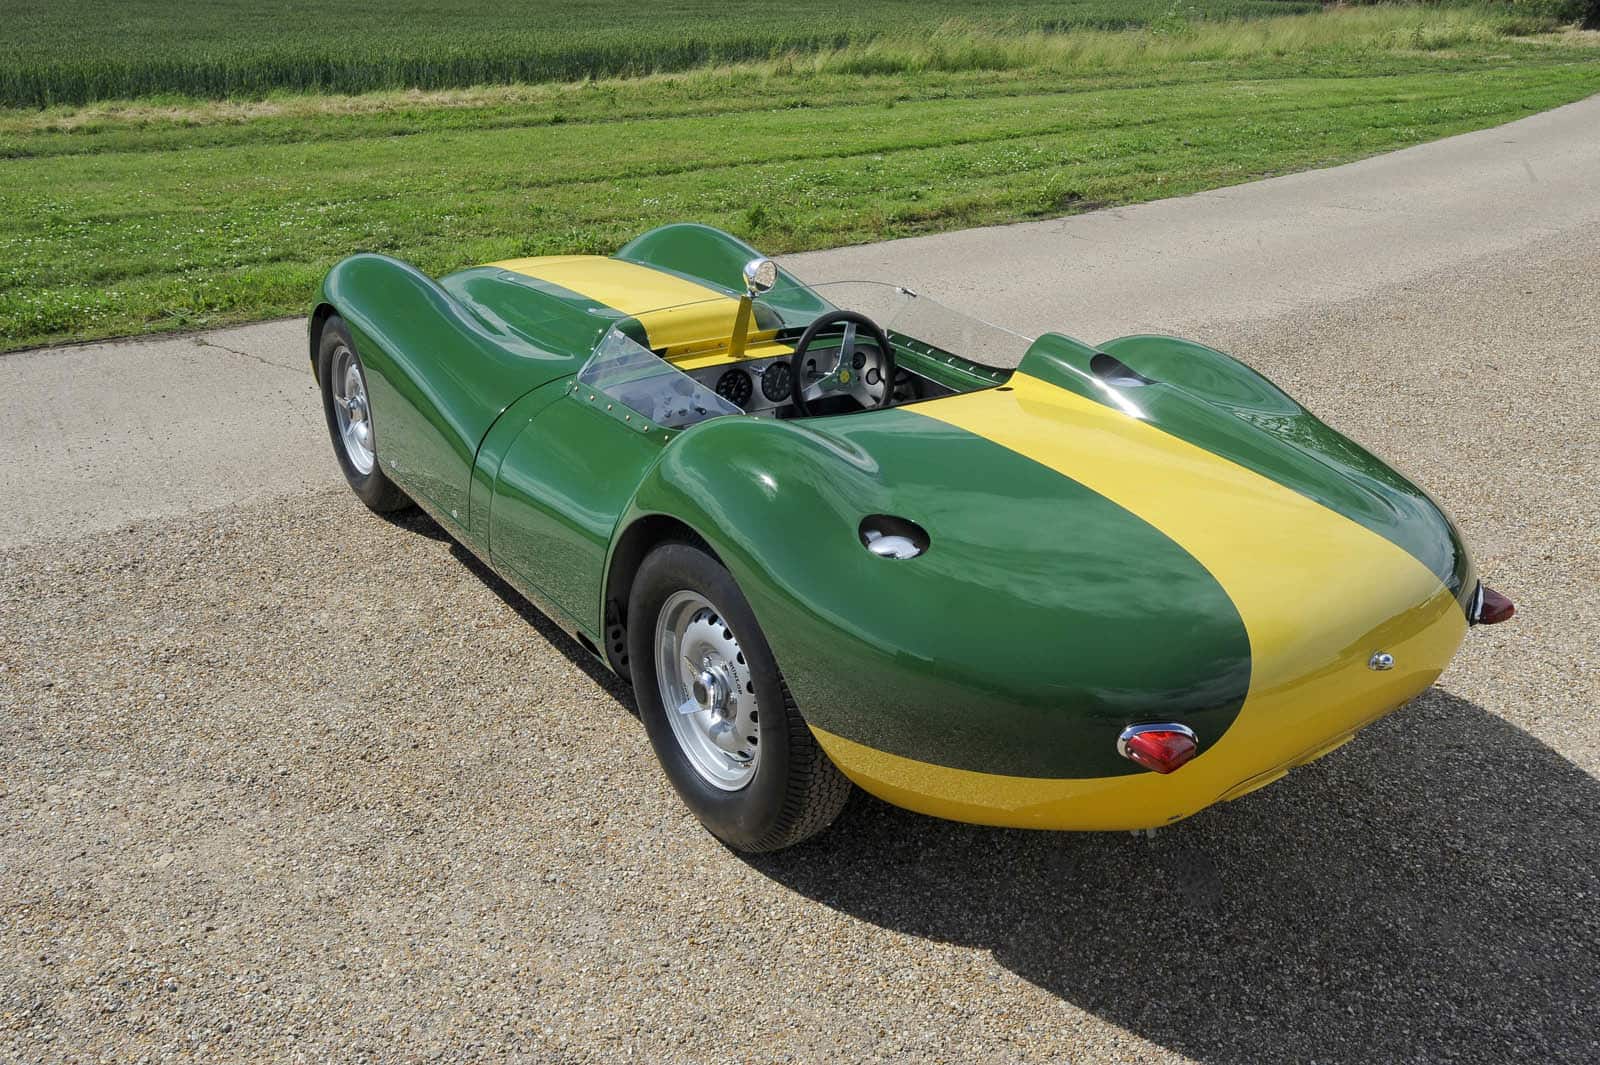 Lister Jaguar Knobbly Stirling Moss edition 19